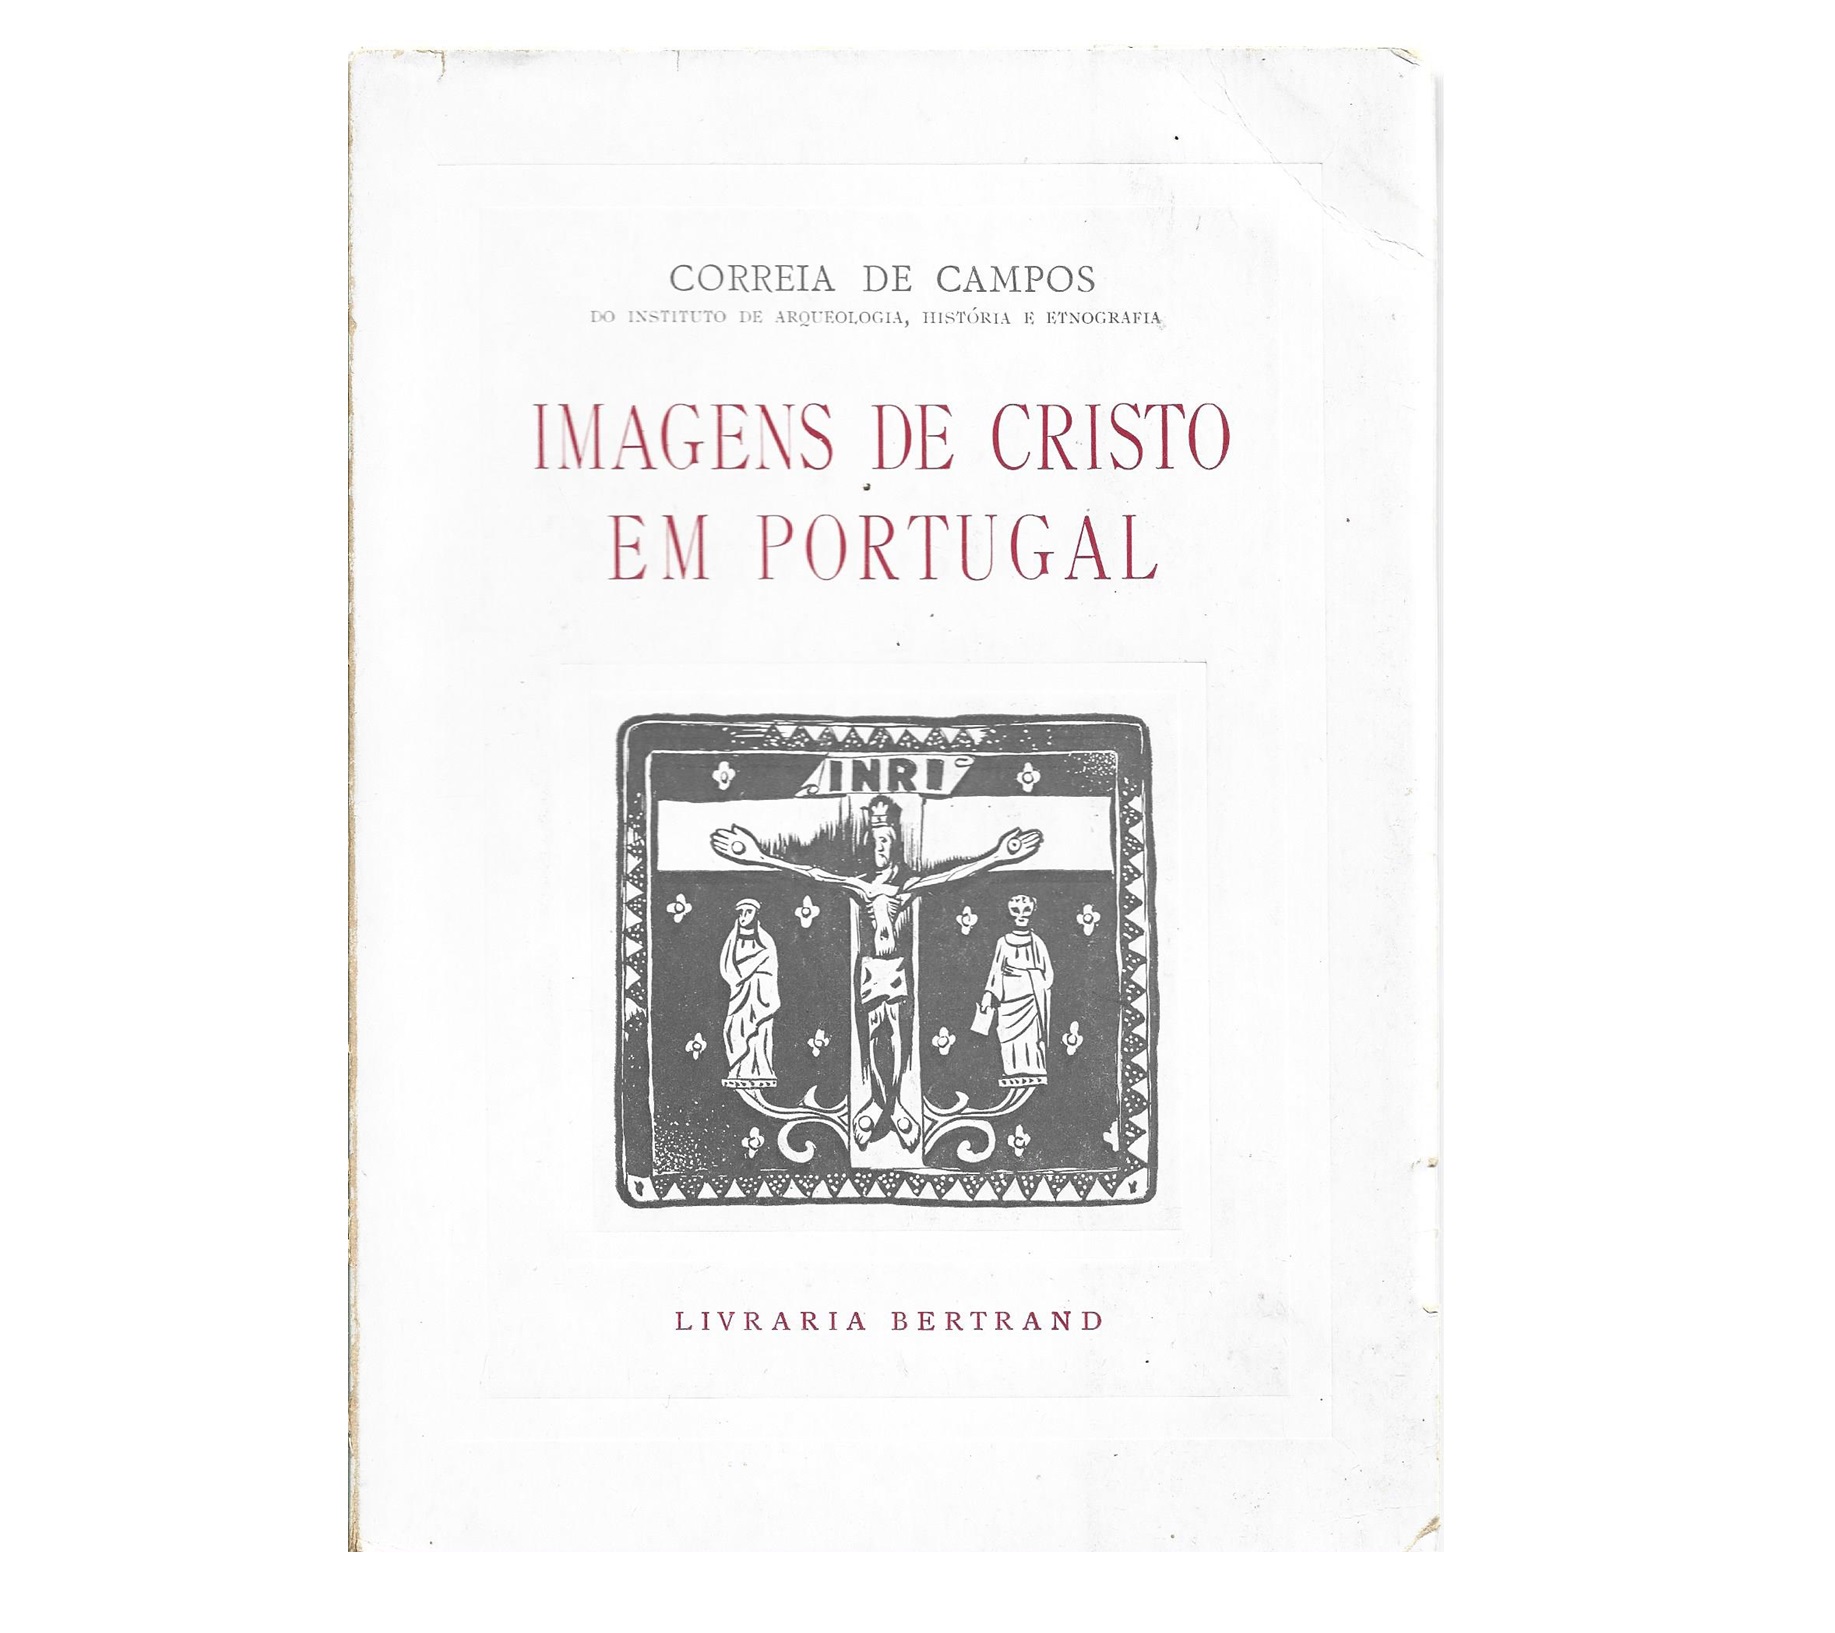 IMAGENS DE CRISTO EM PORTUGAL